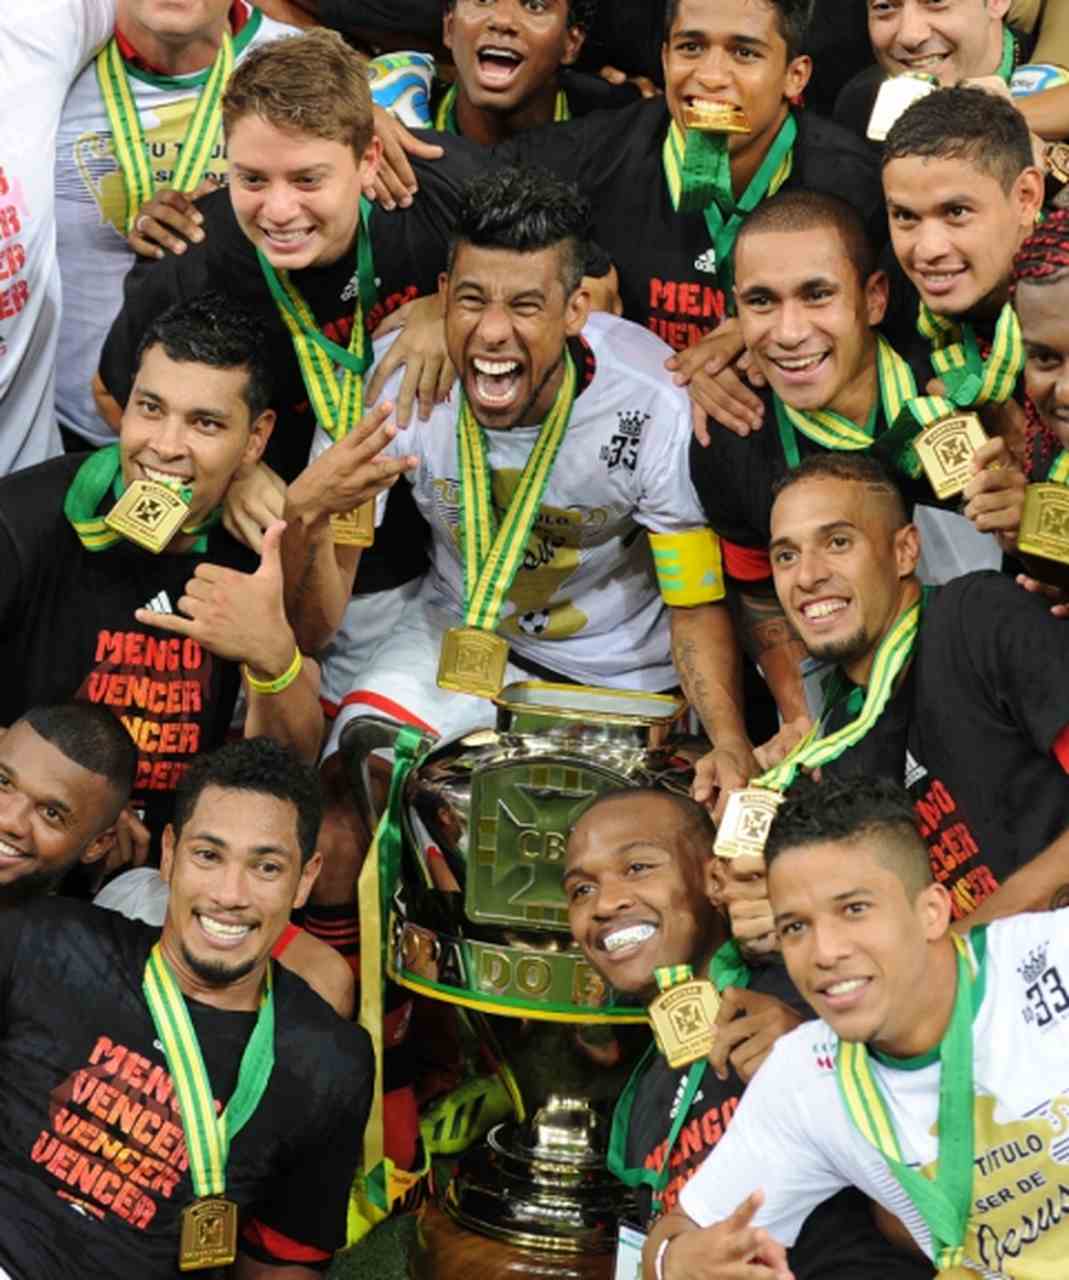 Jogo de ida da final de 2013: Athletico-PR 1 x 1 Flamengo - Na volta, o Flamengo venceu por 2 a 0 e foi campeão.